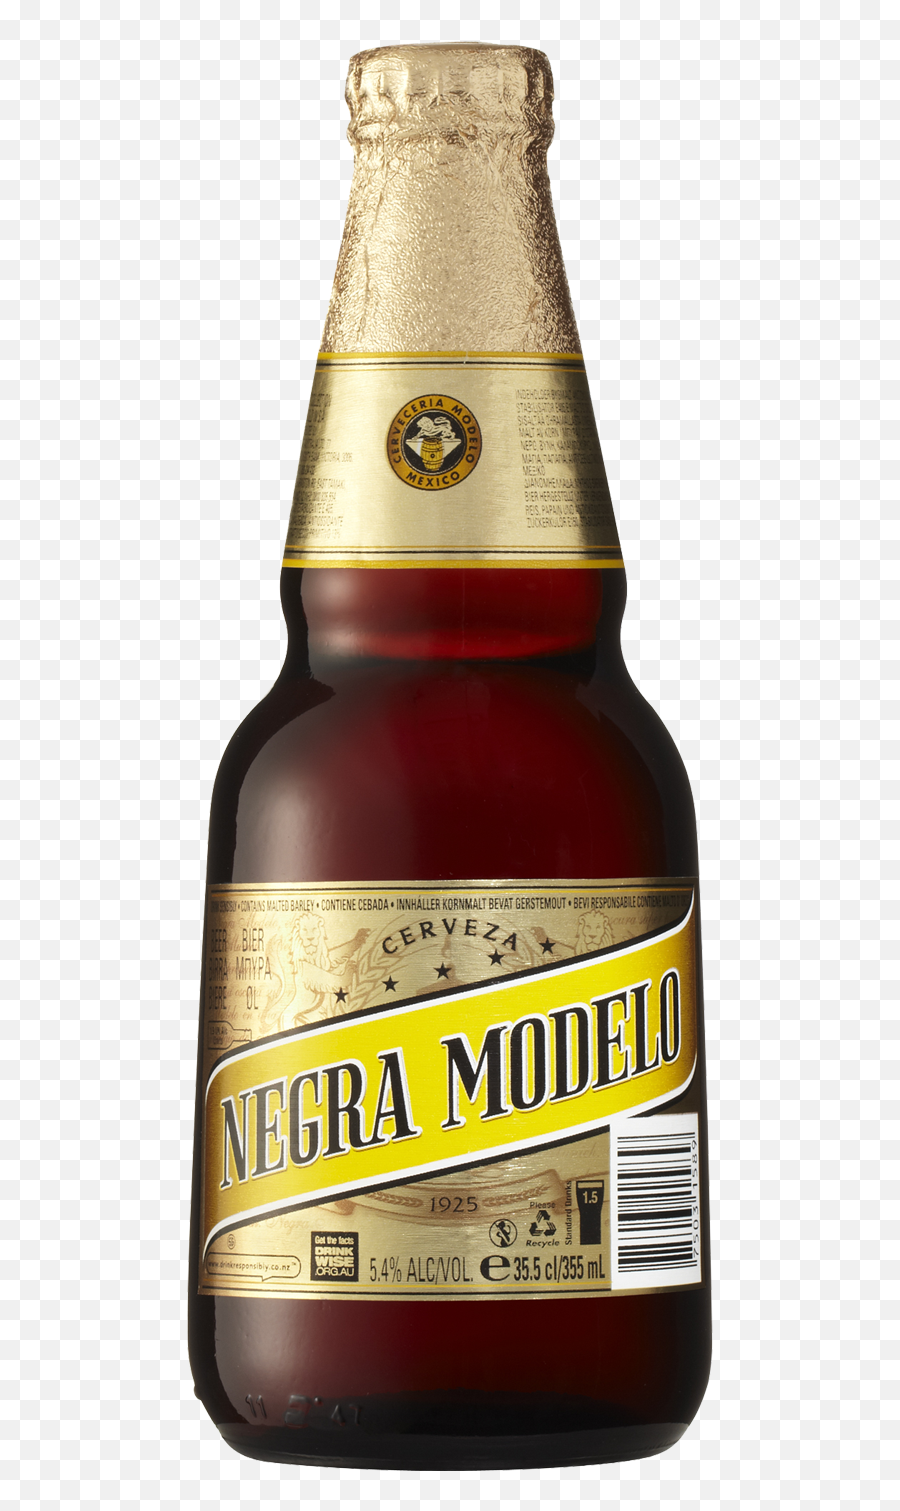 Download Negra Modelo Beer 355ml - Negra Modelo Beer Emoji,Modelo Negra Beer Emoji